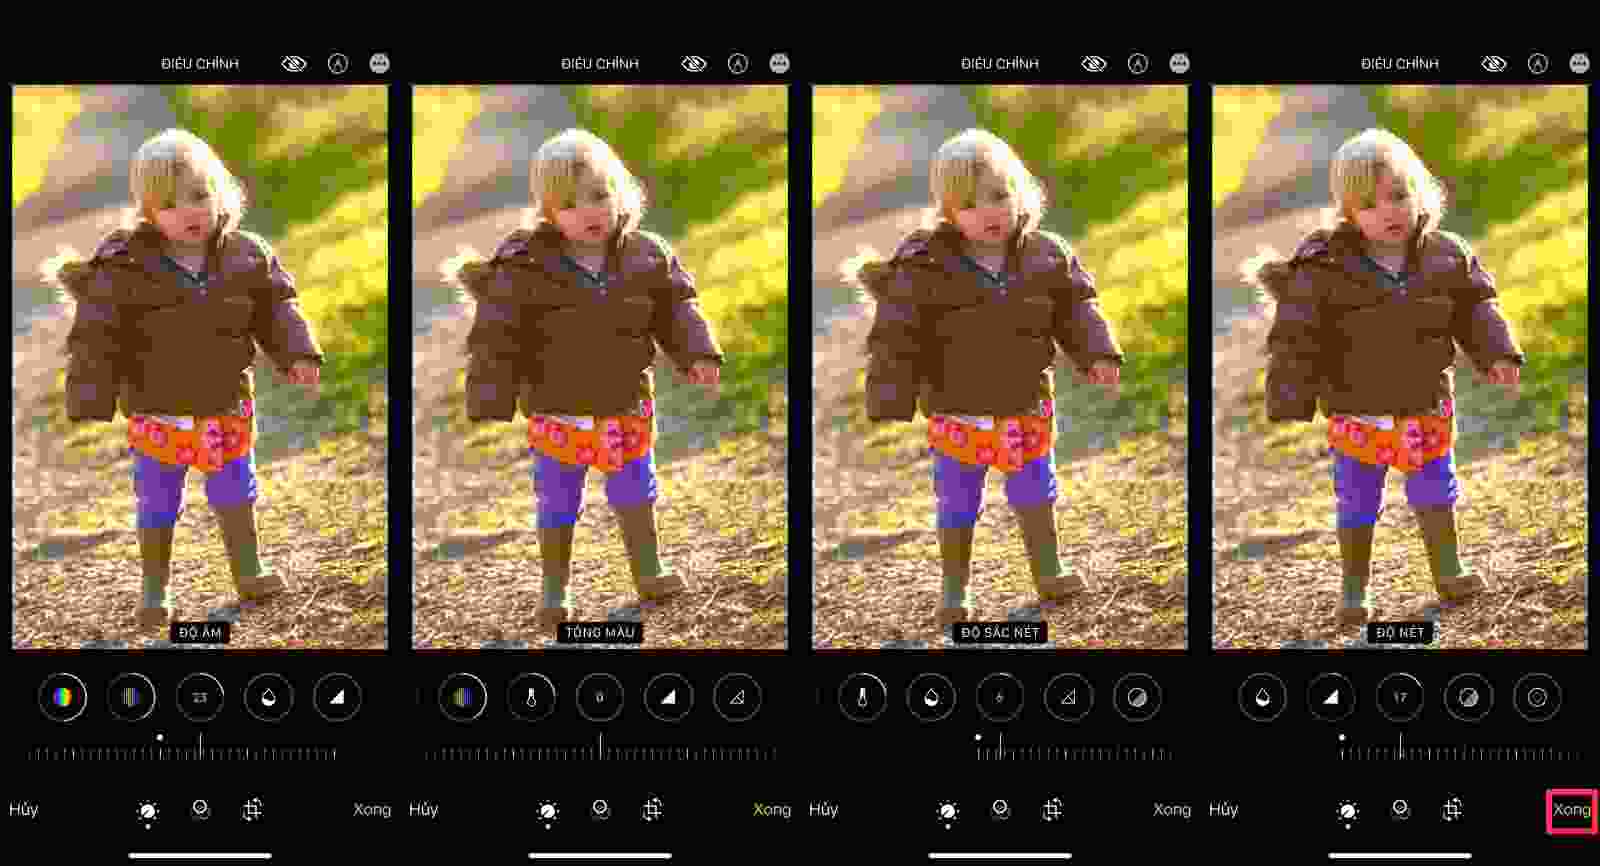 Hãy biến những bức ảnh cũ trở nên mới mẻ hơn bằng cách chỉnh màu trên iPhone! Công cụ chỉnh màu từ Apple không chỉ giúp bạn sửa lỗi màu sắc mà còn giúp cải thiện tính chuyên nghiệp và độ sáng cho bức ảnh của bạn.